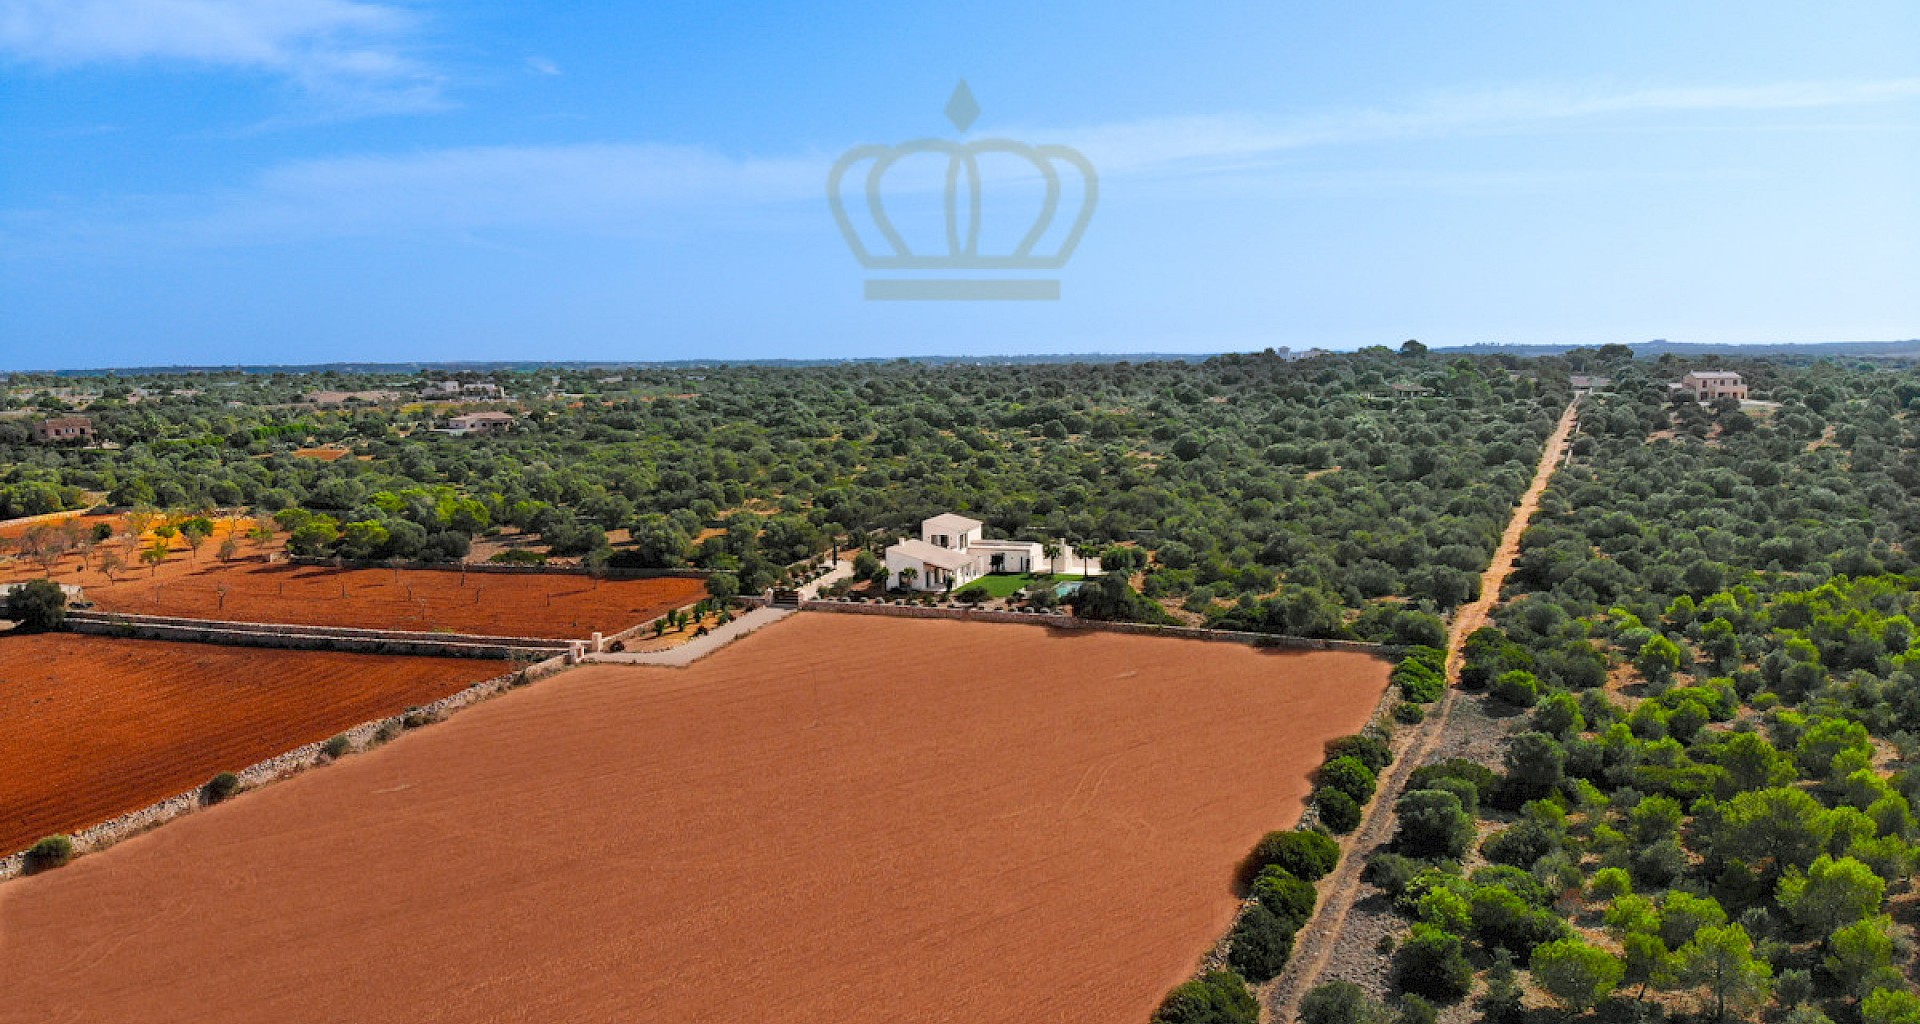 KROHN & LUEDEMANN Modern finca in great location in Ses Salines Mallorca with pool in great landscape 